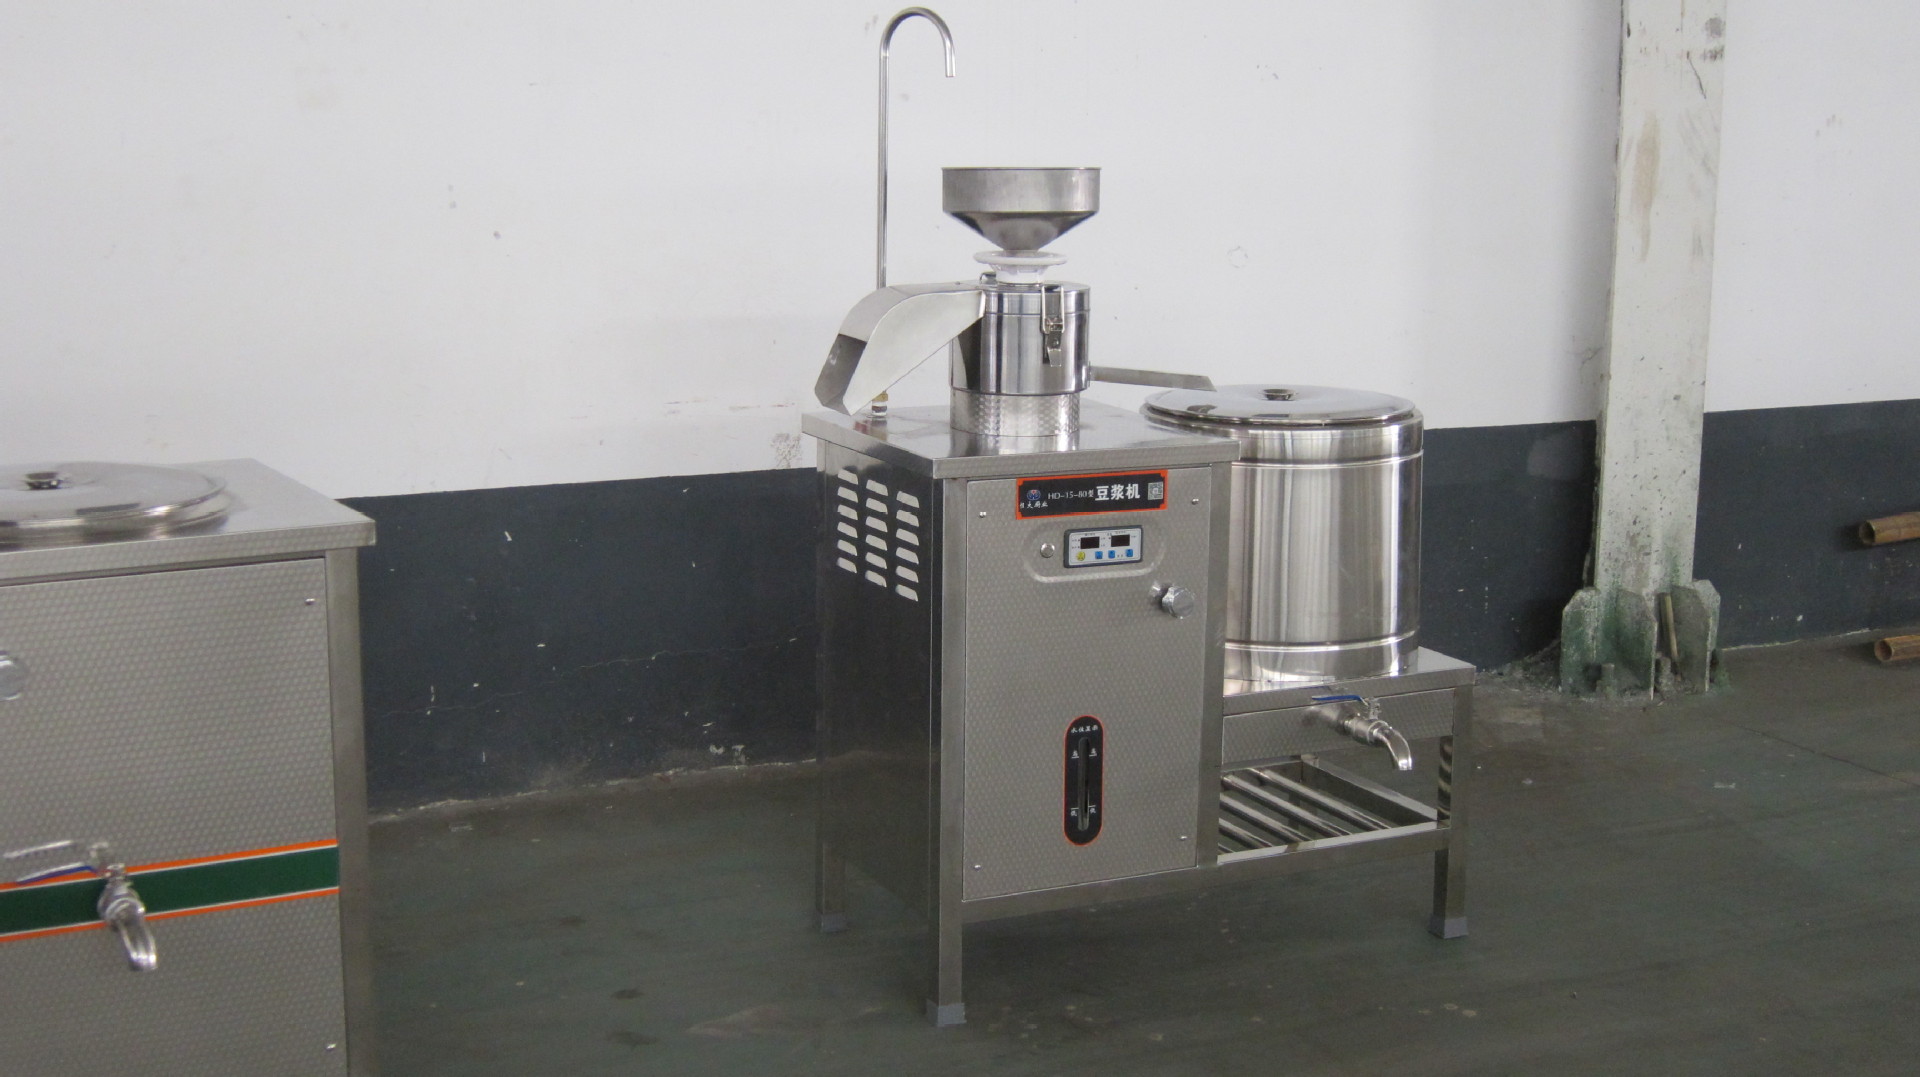 专业订制 商用五谷杂粮营养豆奶机 新型专业内脂豆腐机